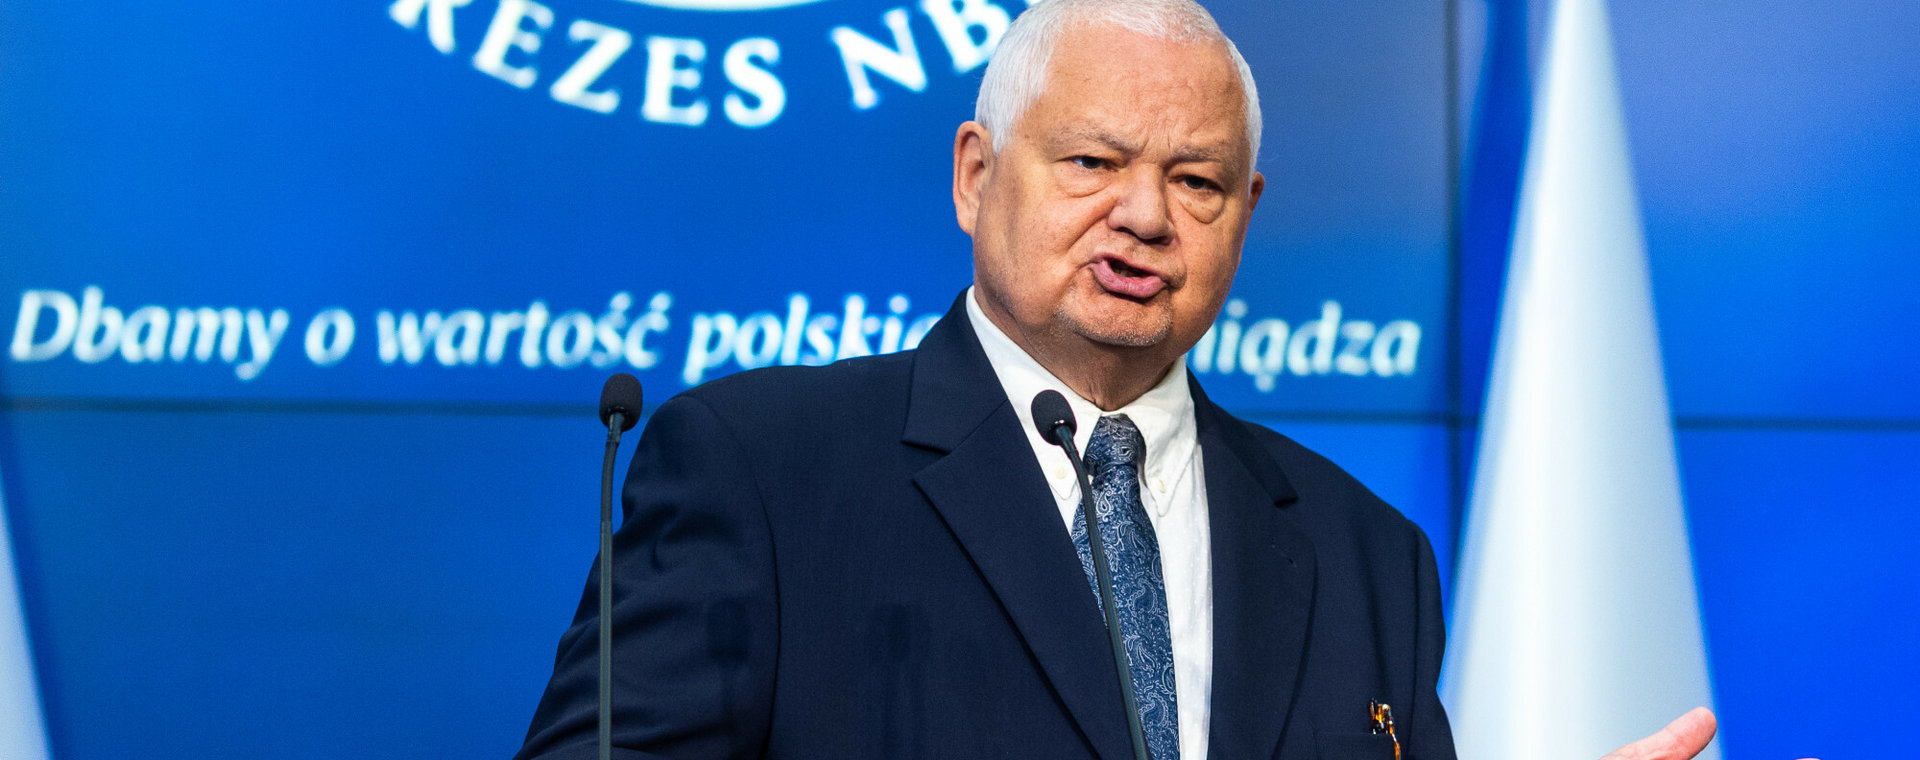 Adam Glapiński, prezes Narodowego Banku Polskiego i przewodniczący Rady Polityki Pieniężnej.